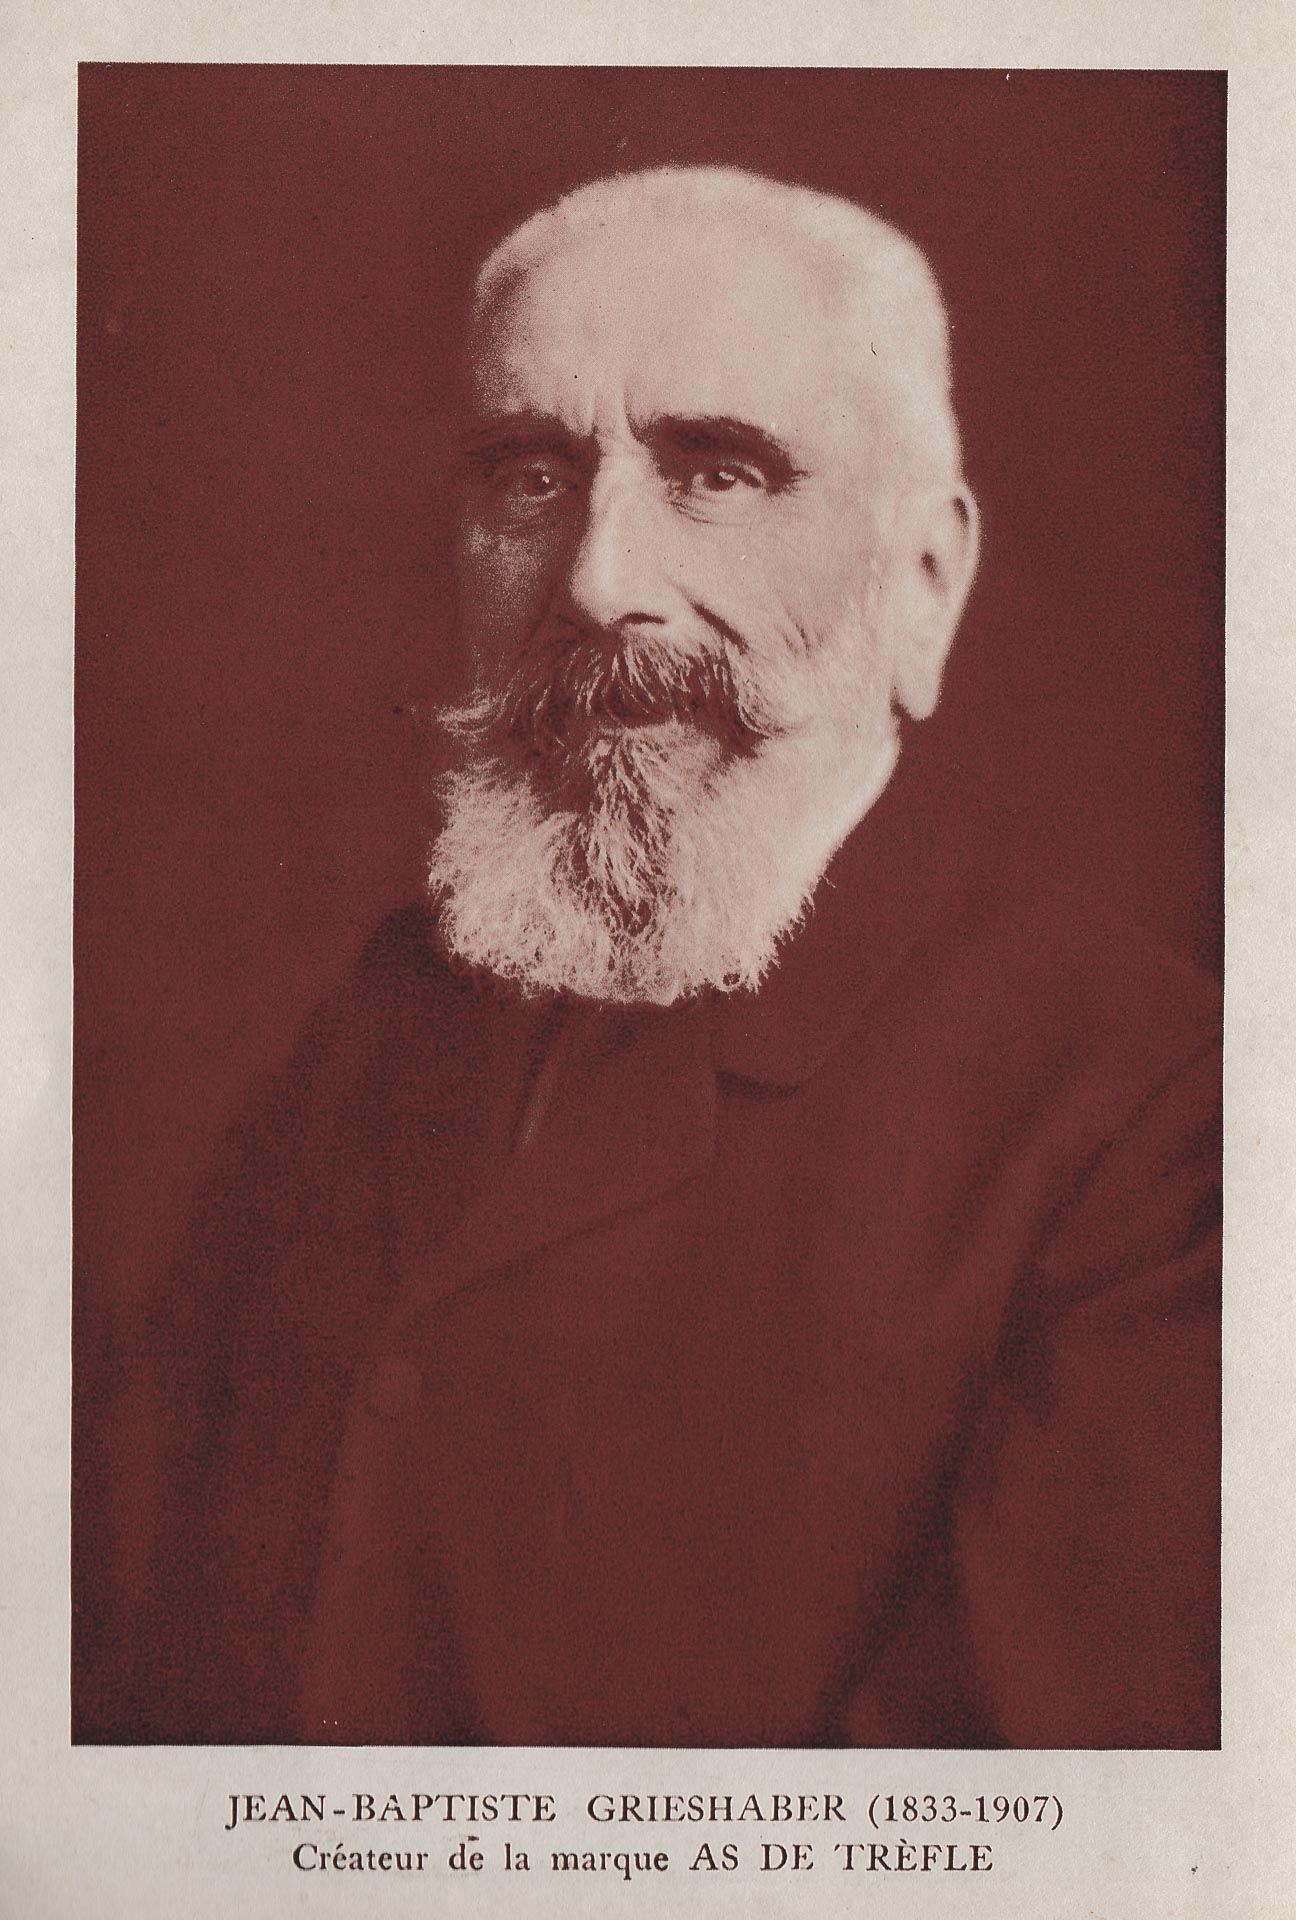 Jean-Baptiste Grieshaber (1833-1907) créateur de la marque As de trèfle